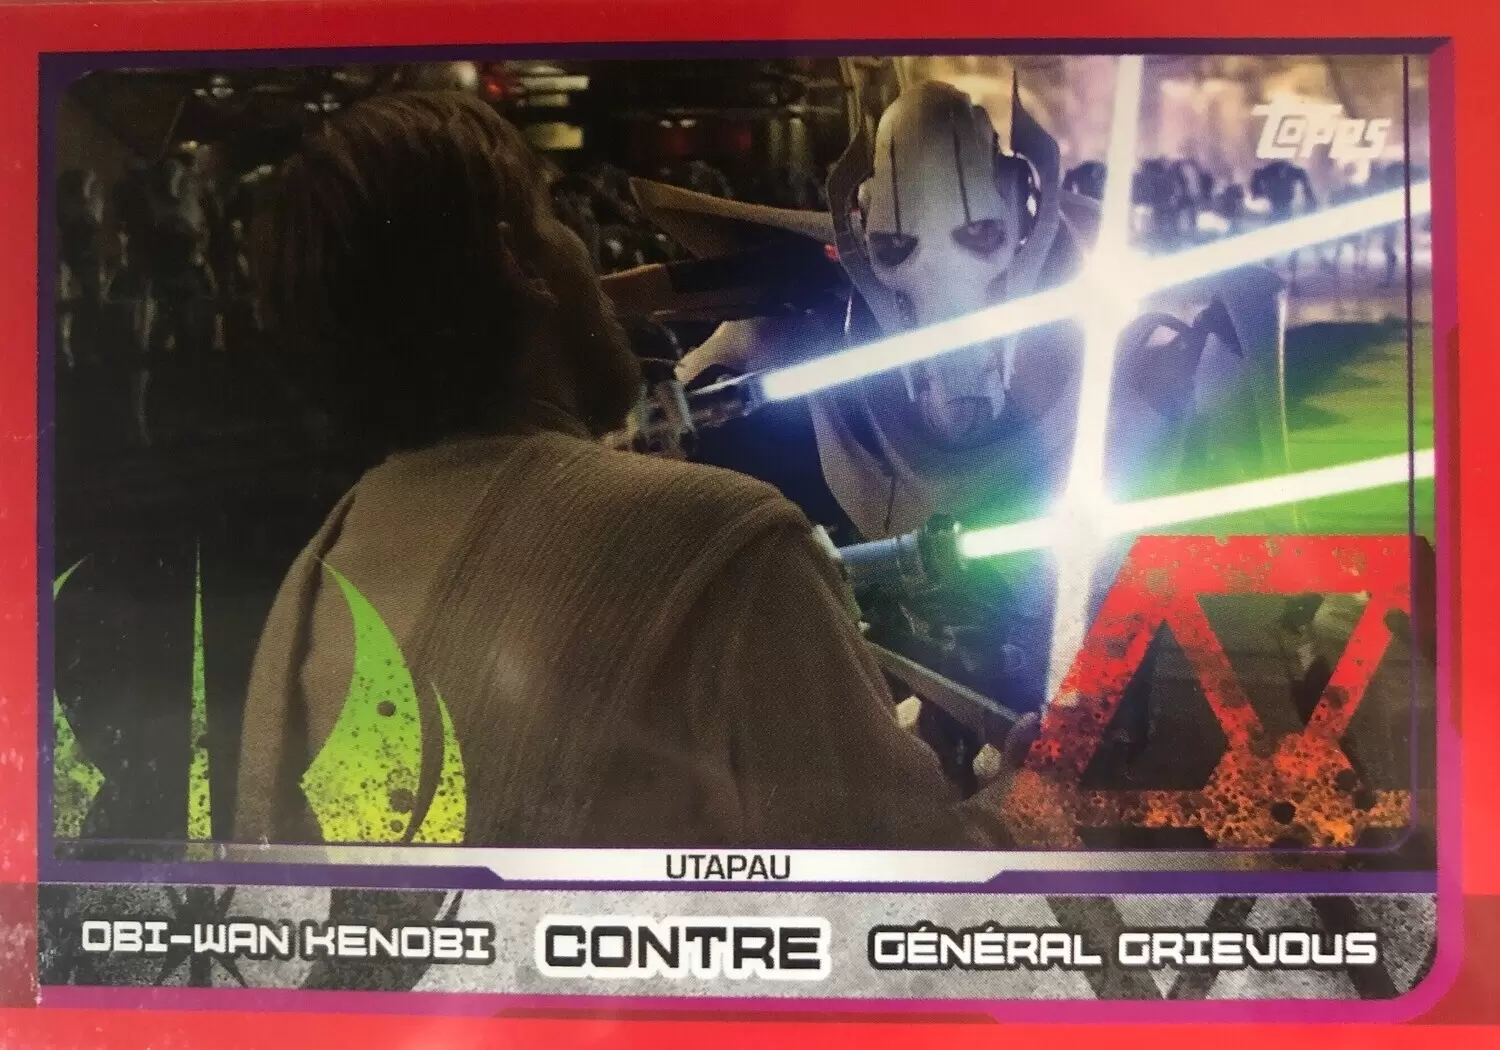 Topps - Voyage vers Star wars : Les Derniers Jedi - Obi-Wan Kenobi contre Général Grievous (Utapau)